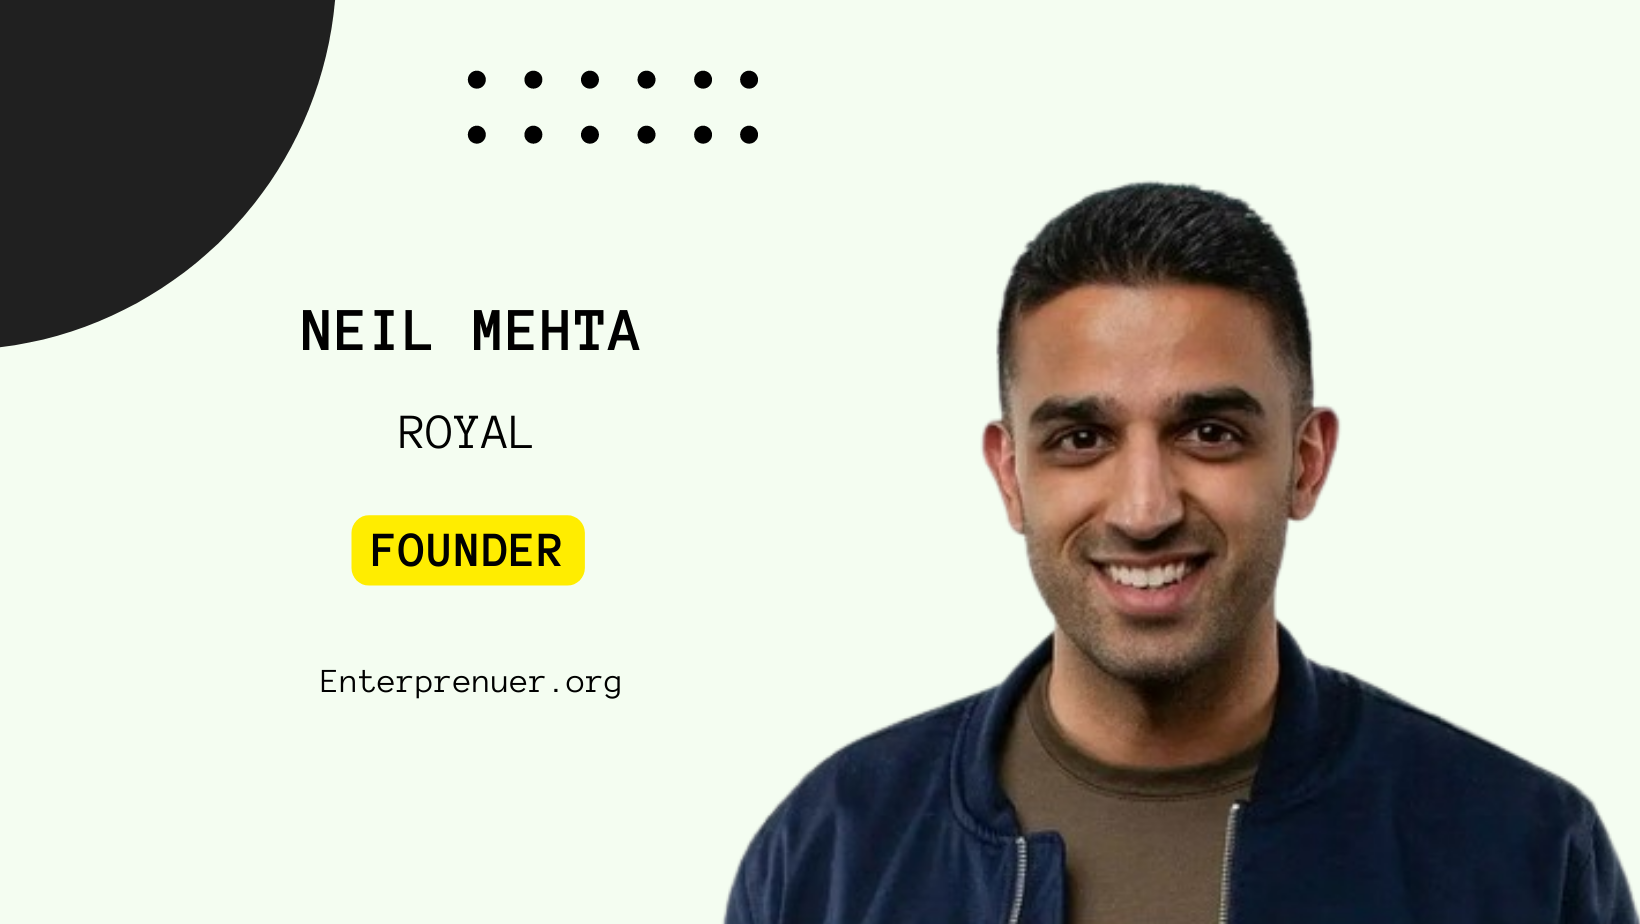 Neil Mehta Founder of Royal